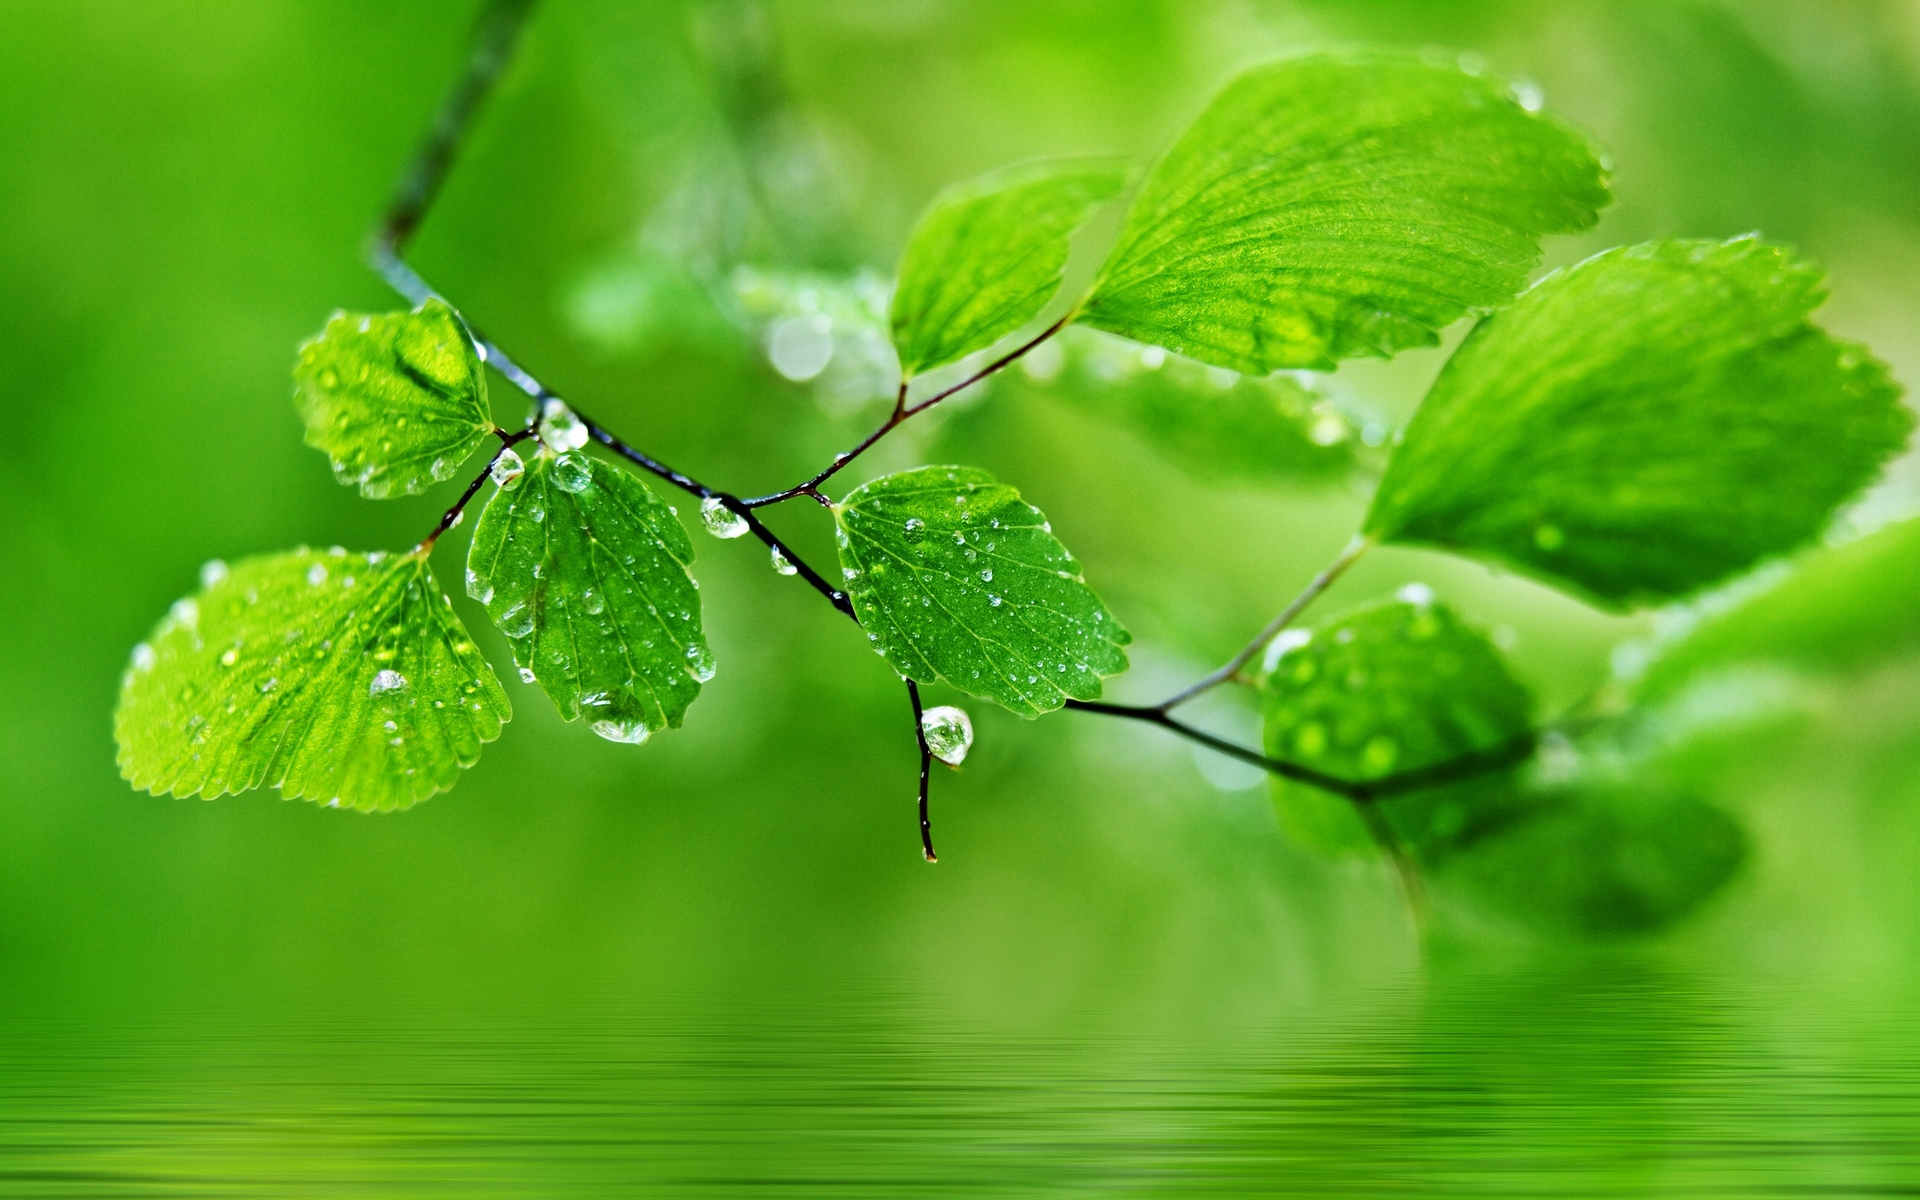 leaves, drops, nature, macro, pond, greens, rain, spring, листья, капли, природа, макро, водоем, зелень, дождь, весна